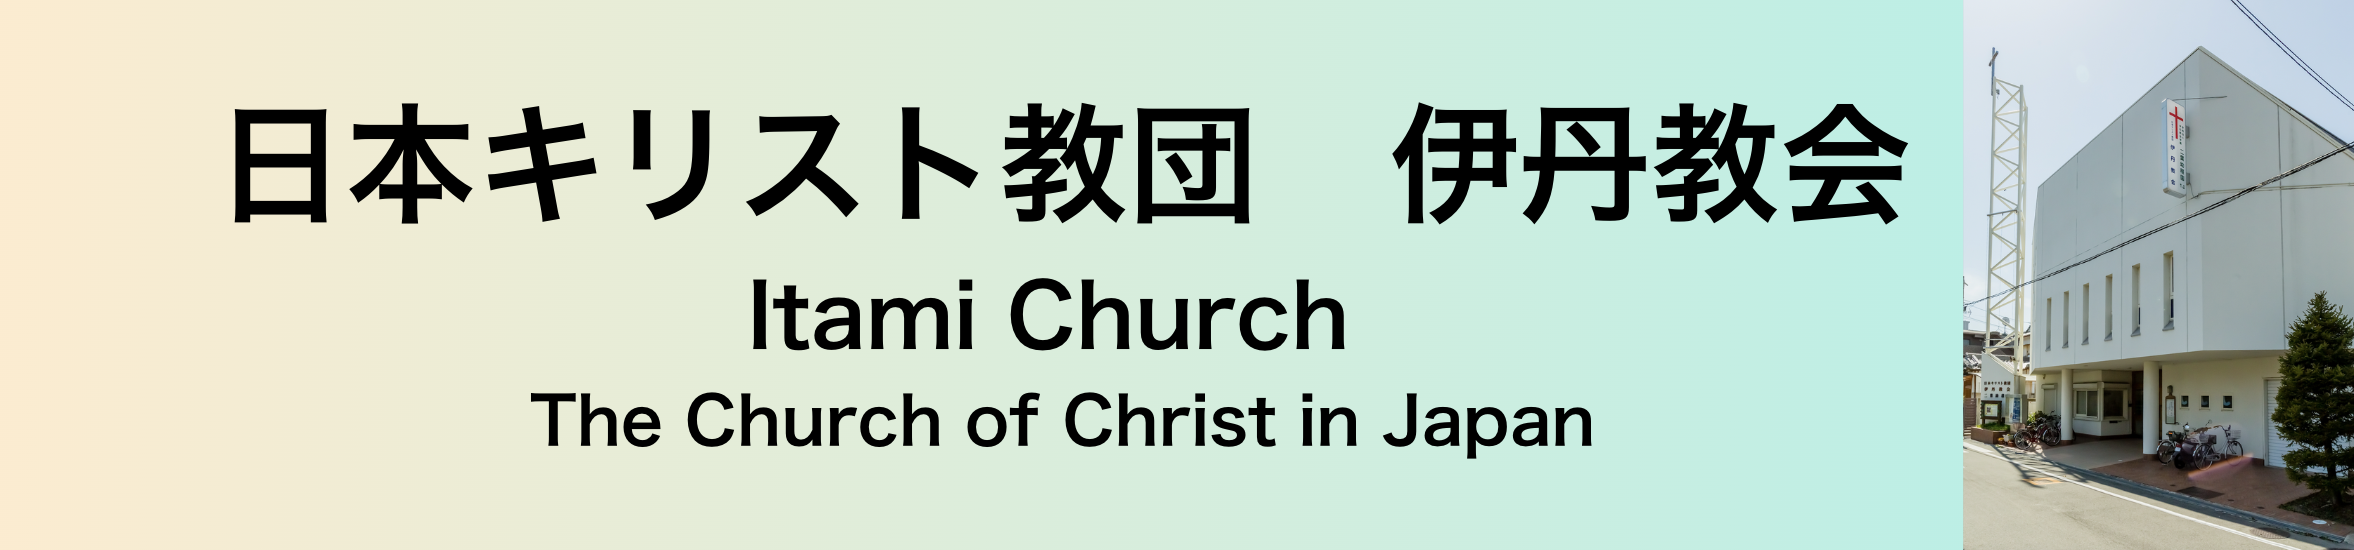 日本キリスト教団伊丹教会